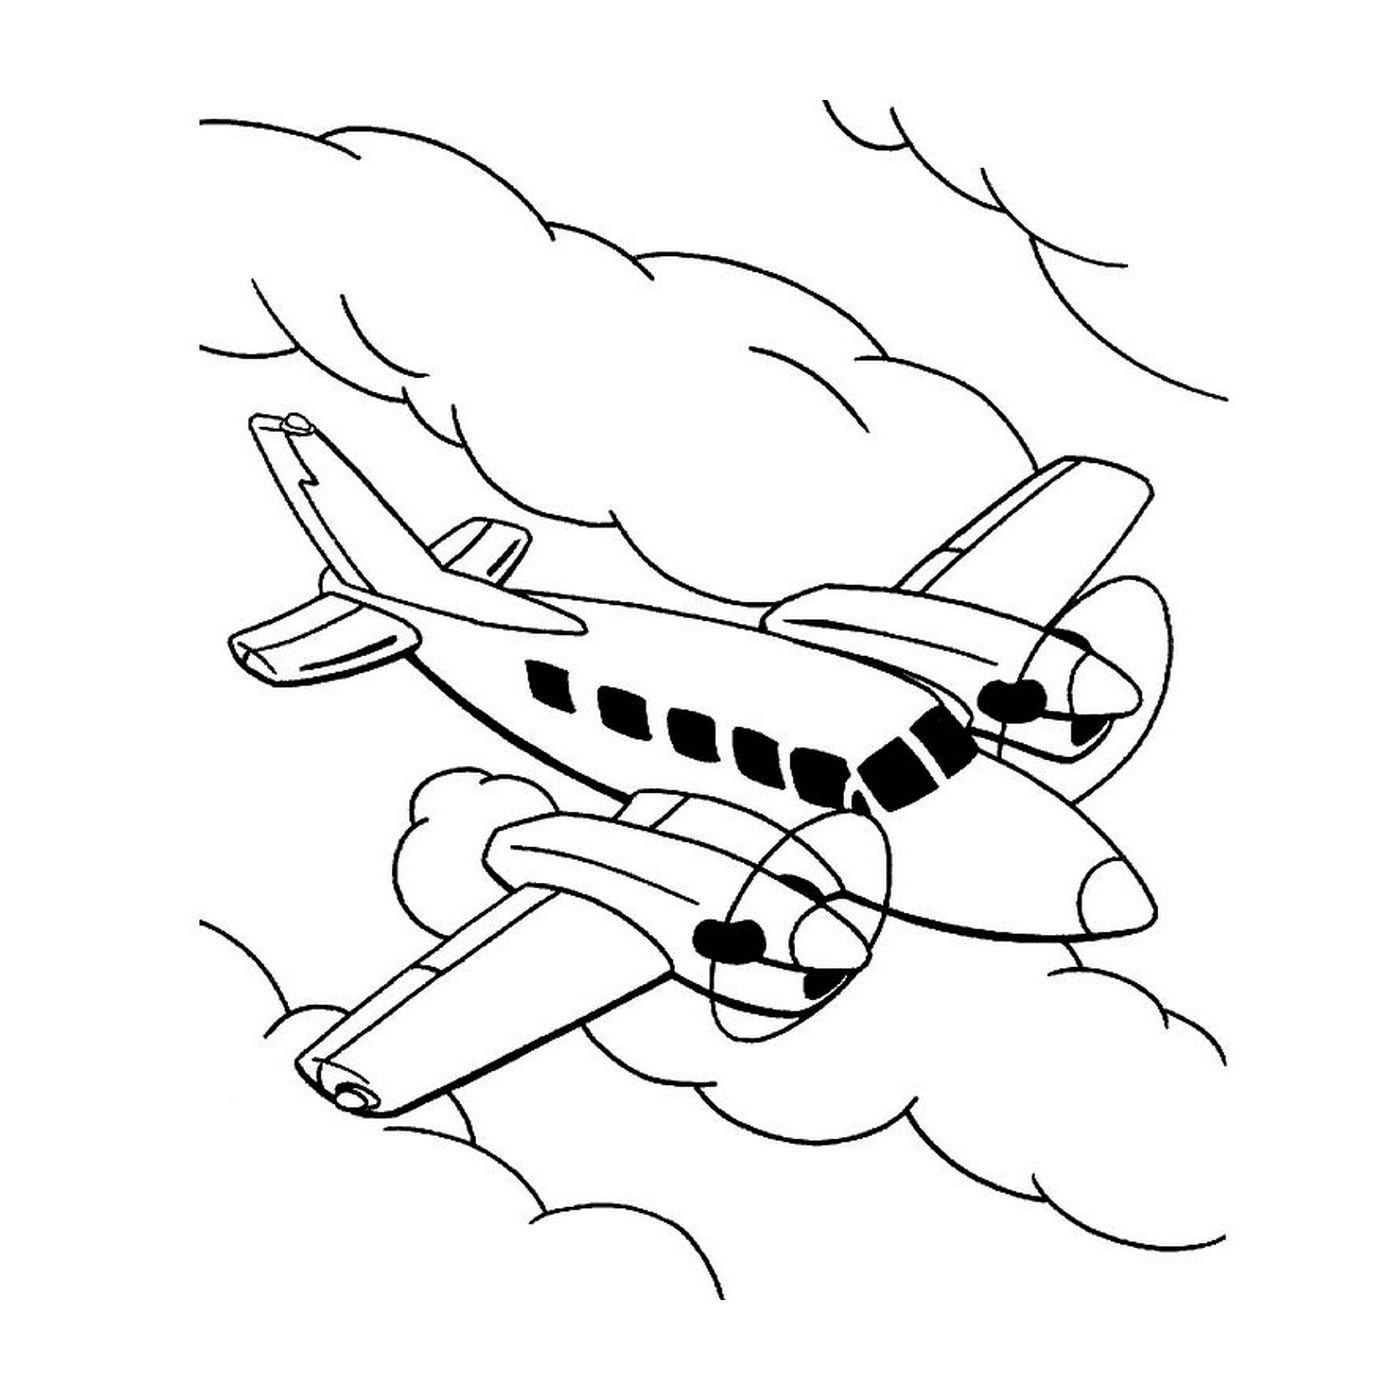  Un aereo vola nel cielo tra le nuvole 